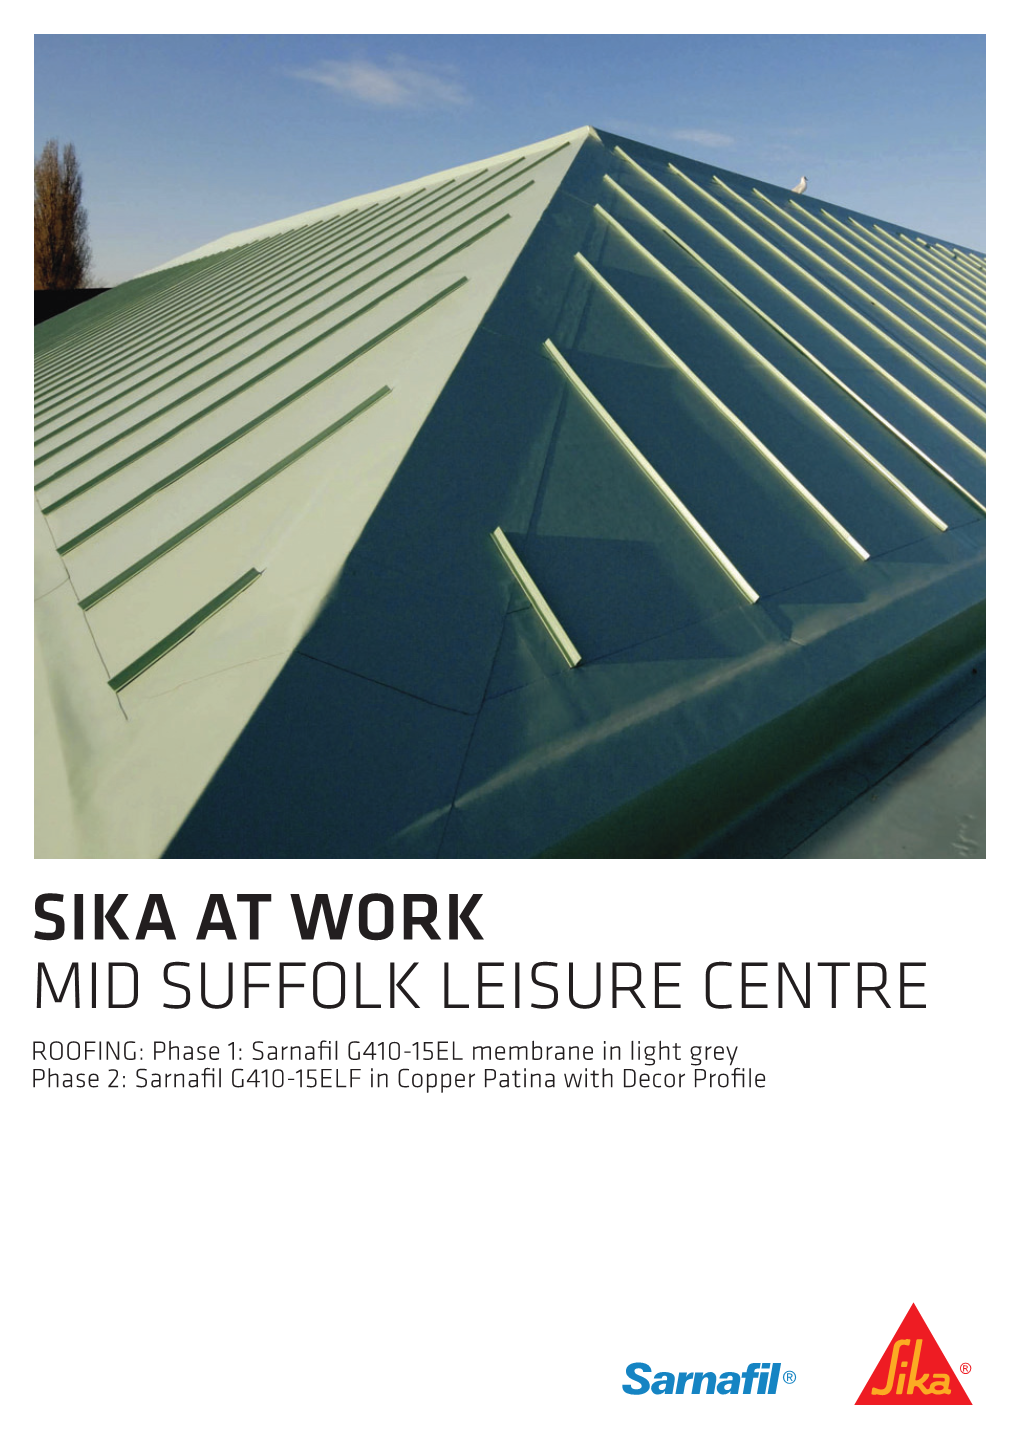 Mid Suffolk Leisure Centre